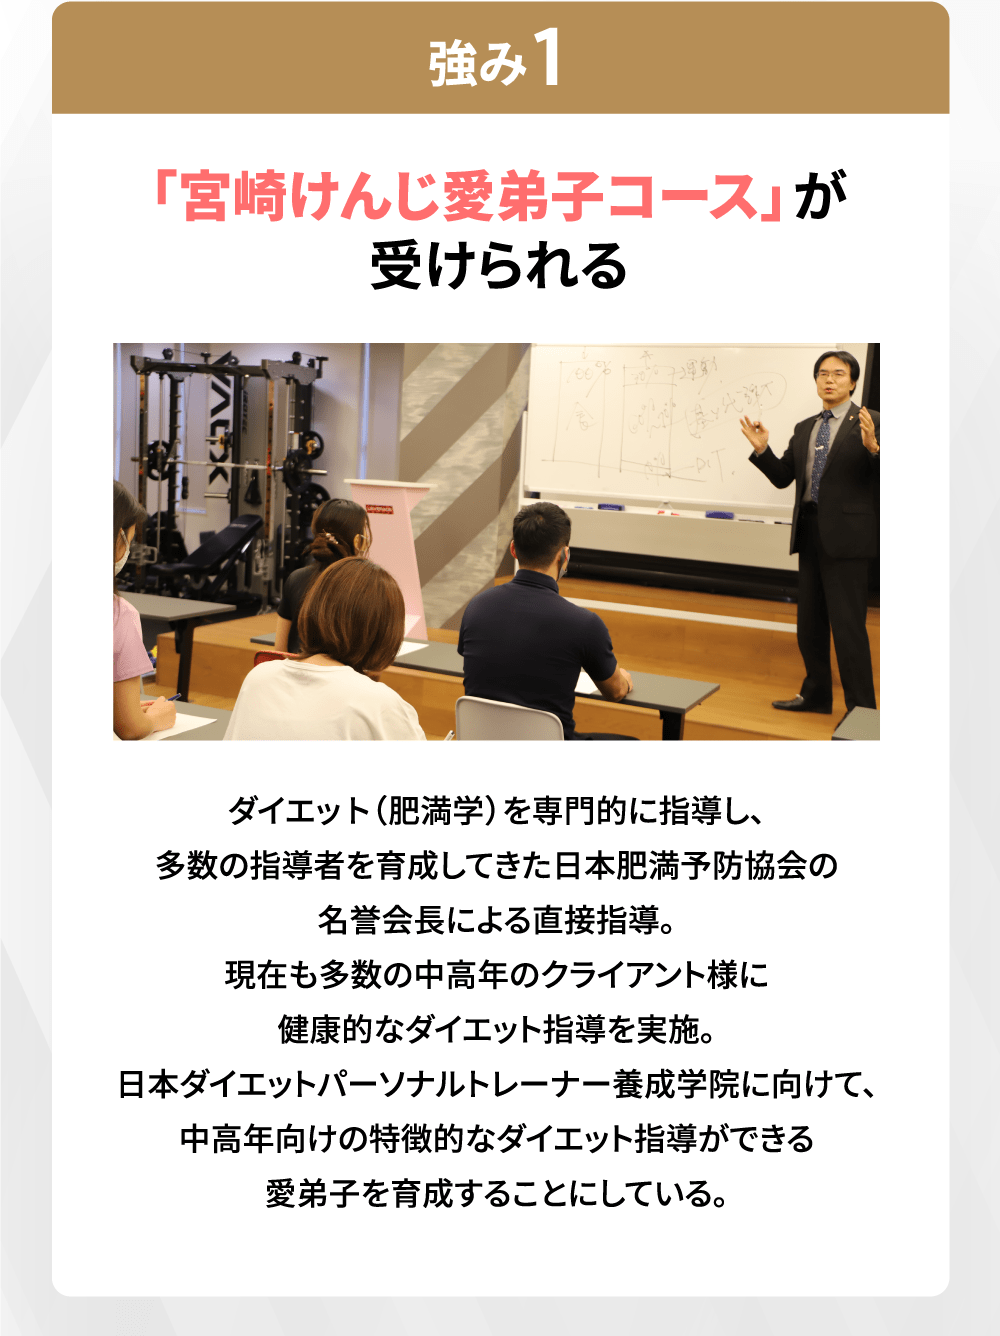 「宮崎けんじ愛弟子コース」が受けられる ダイエット(肥満学)を専門的に指導し、多数の指導者を育成してきた日本肥満予防協会の名誉会長による直接指導。現在も多数の中高年のクライアント様に健康的なダイエット指導を実施。日本ダイエットパーソナルトレーナー養成学院に向けて、中高年向けの特徴的なダイエット指導ができる愛弟子を育成することにしている。